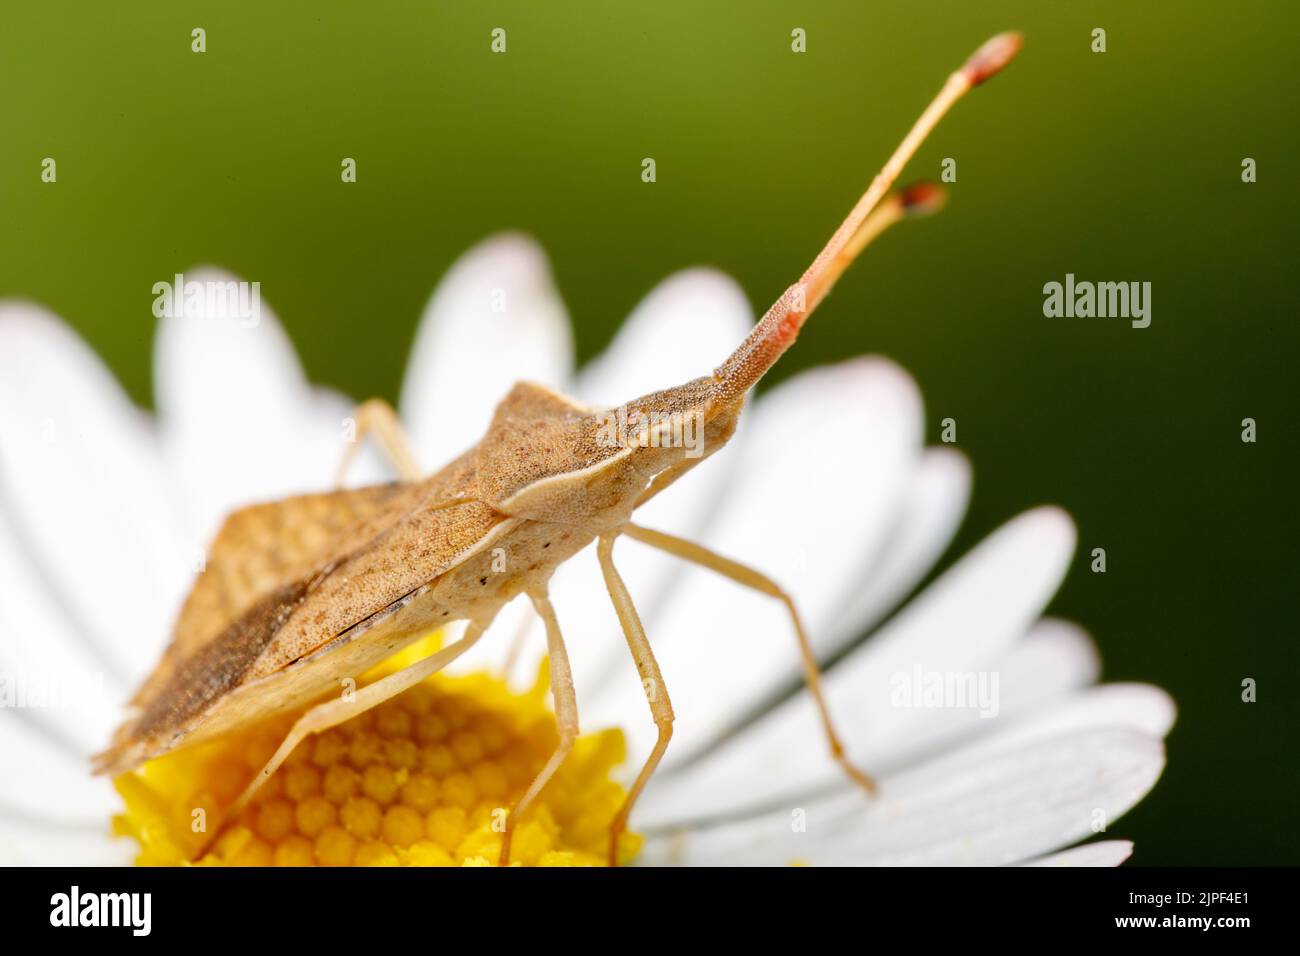 A closeup shot of a Coreidae bug on a daisy in the garden Stock Photo